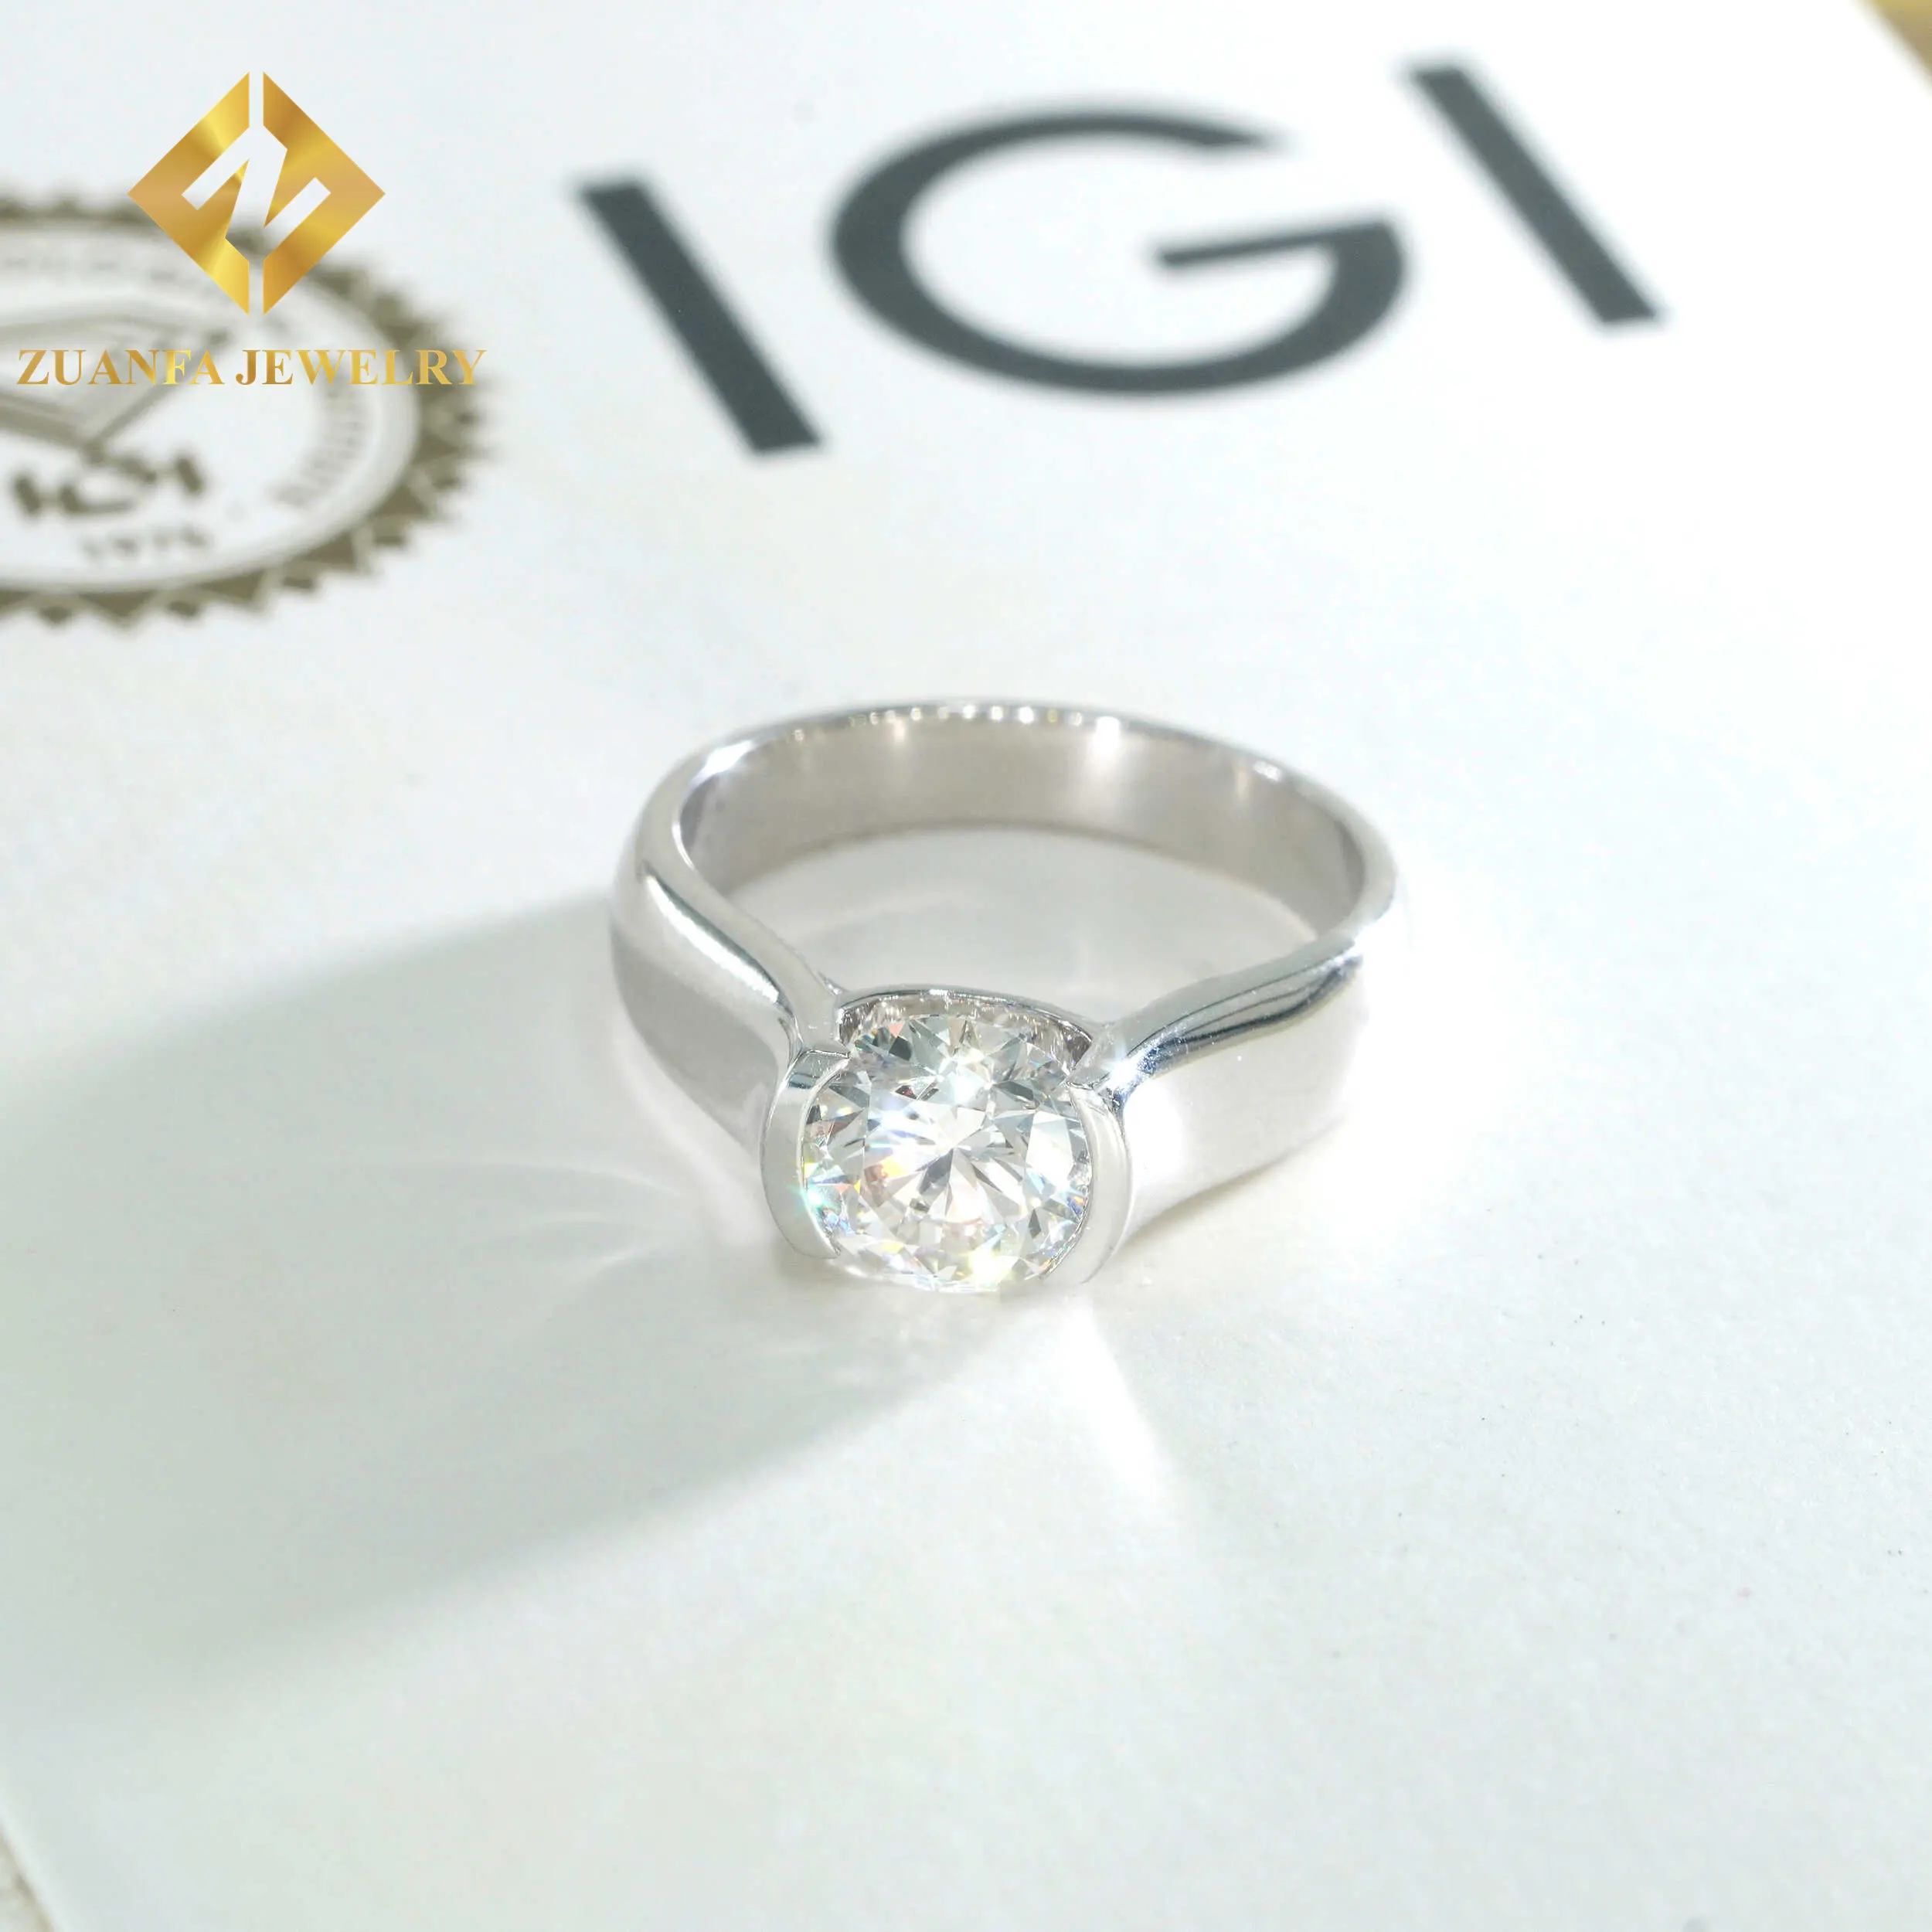 14K ठोस सोना ब्रिलियंट कट सीवीडी प्रयोगशाला में विकसित हीरे आईजीआई प्रमाणपत्र 2 कैरेट हीरे सगाई की अंगूठियां